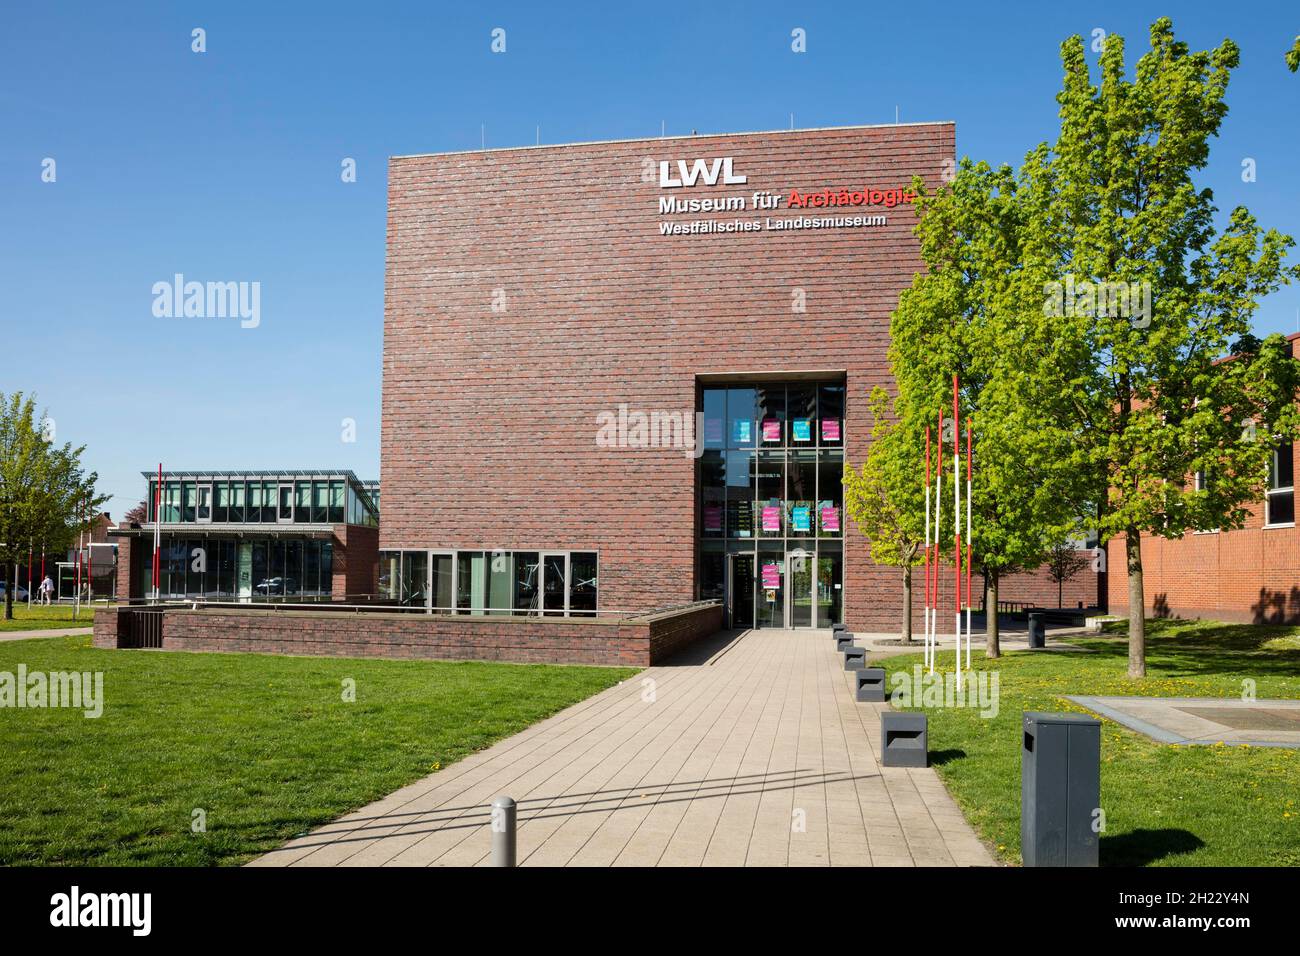 LWL Museum für Archäologie, Westfälisches Landesmuseum